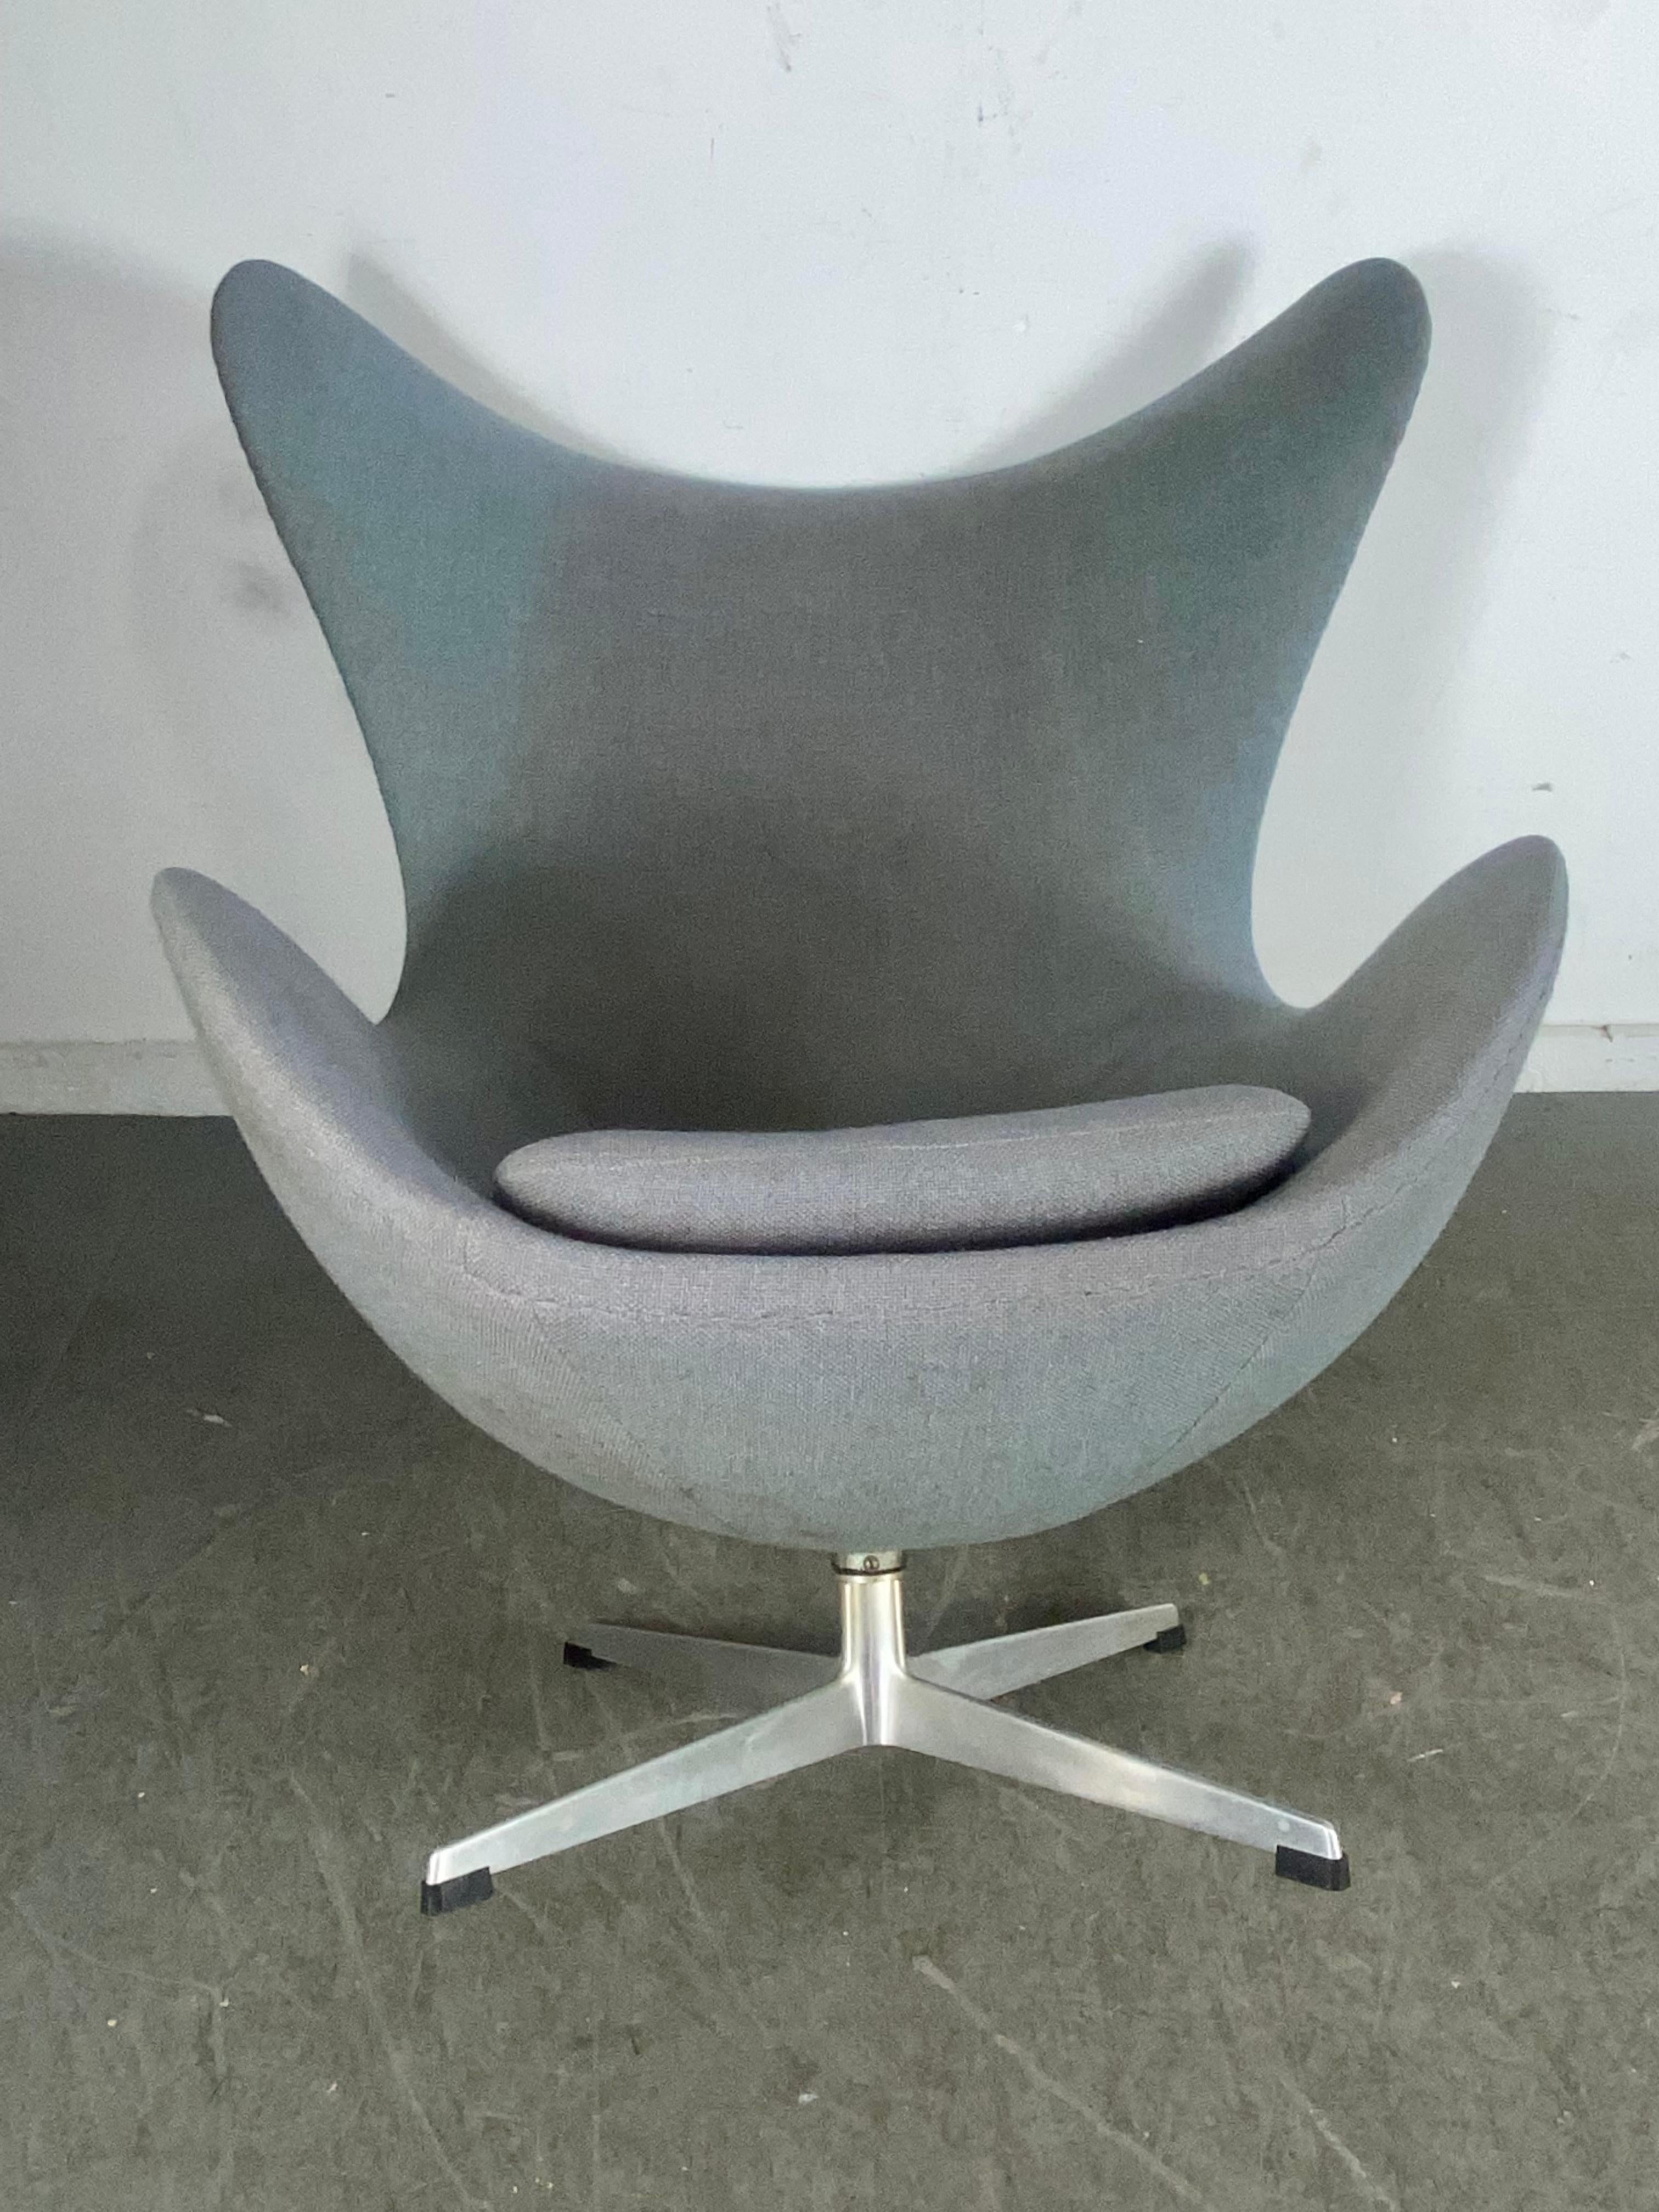 Classic 1960s  Egg Chair designed by Arne Jacobsen for Fritzhansen / Denmark For Sale 2